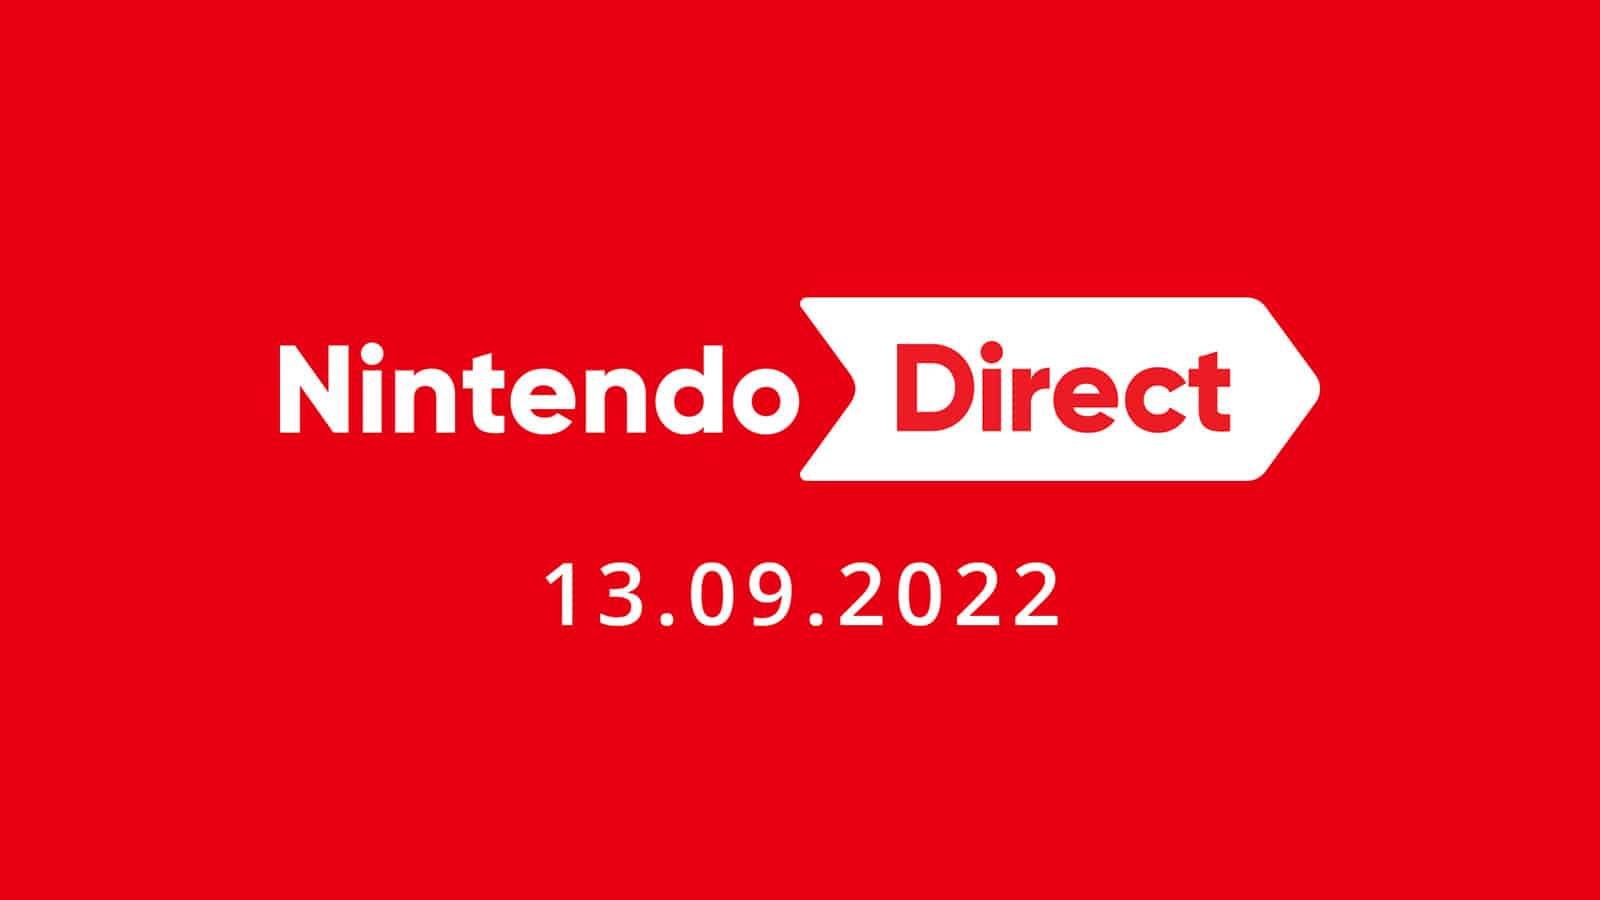 direct from nintendo september 13, 2022